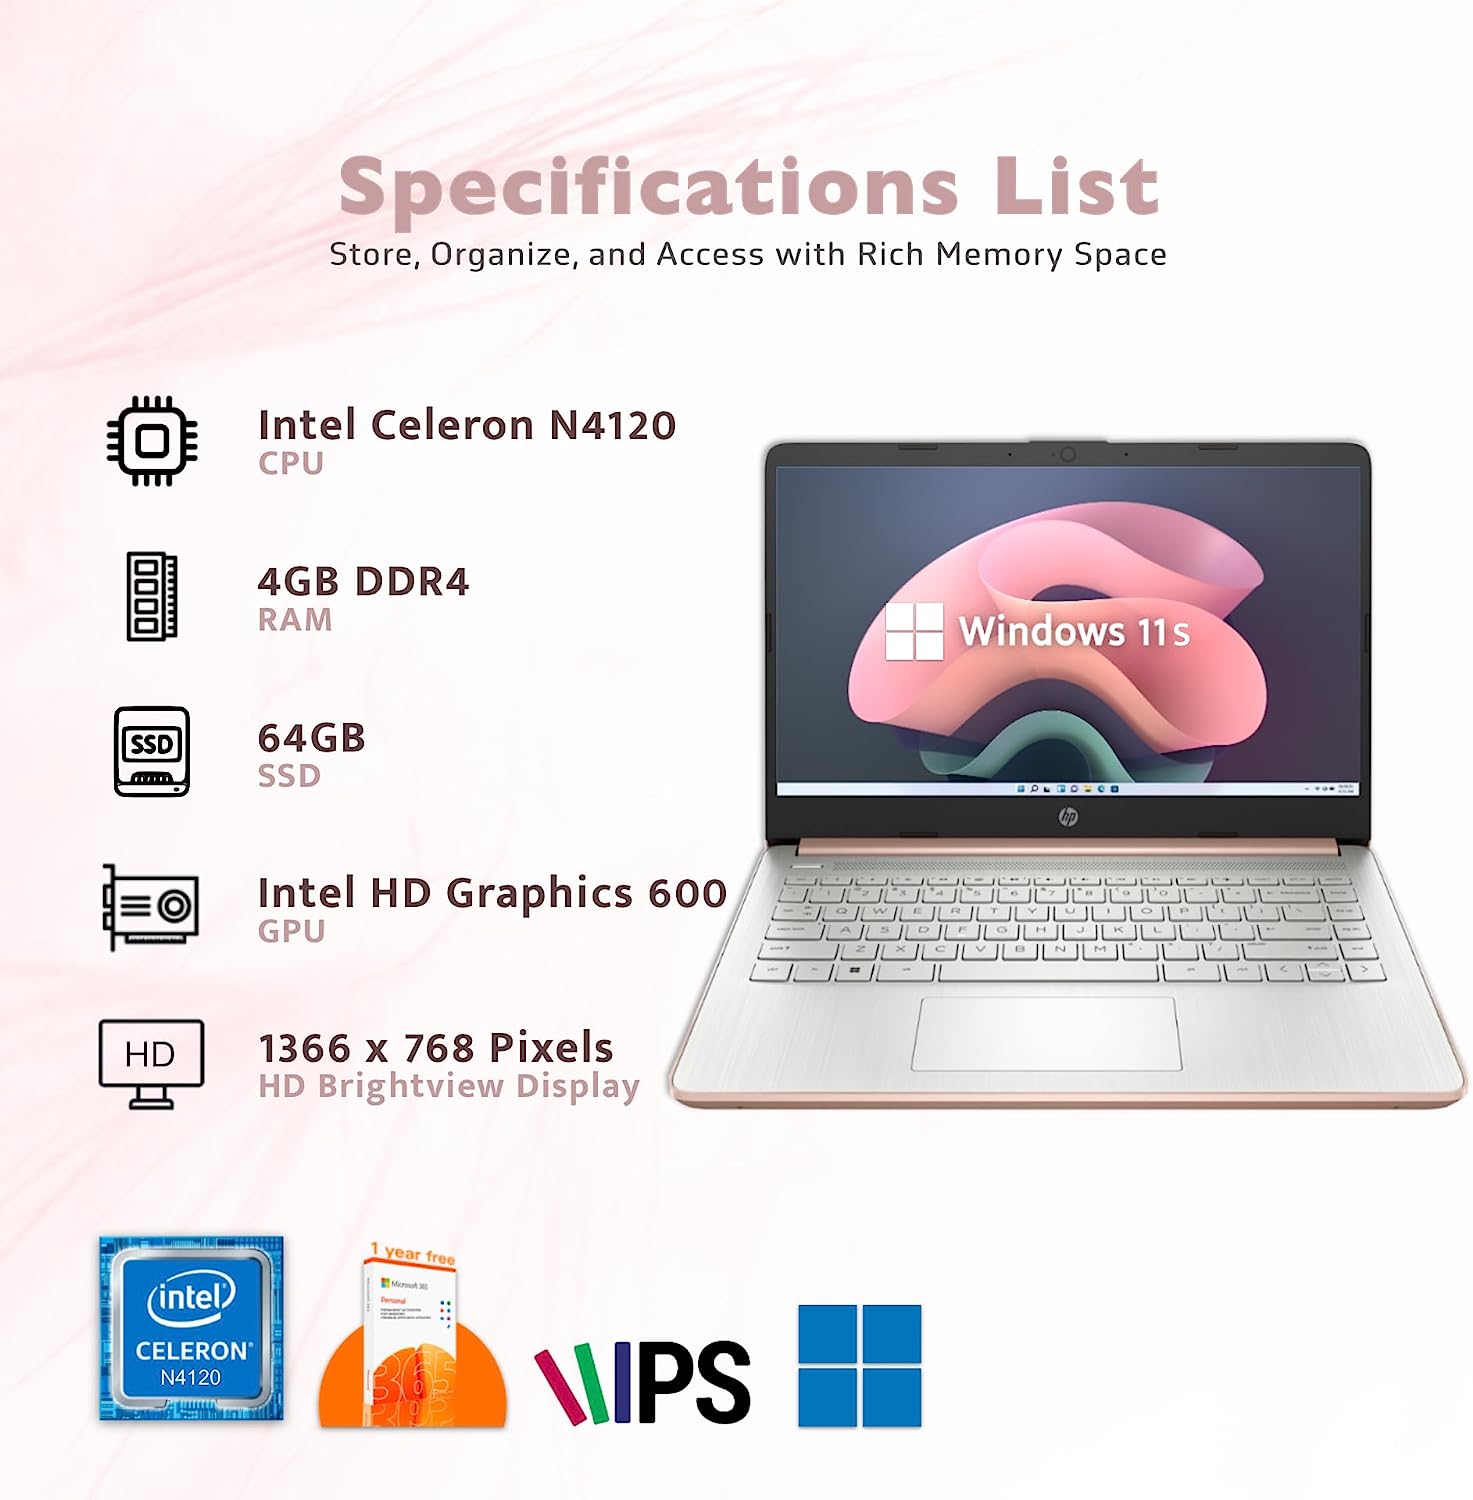 HP 2022 Stream 14'' HD Laptop, Intel Celeron N4020 Dual-core Processor, 4GB DDR4 RAM, 64GB eMMC, 1 Year Office 365, Webcam, HDMI, Windows 10S, White, 32GB SnowBell USB Card